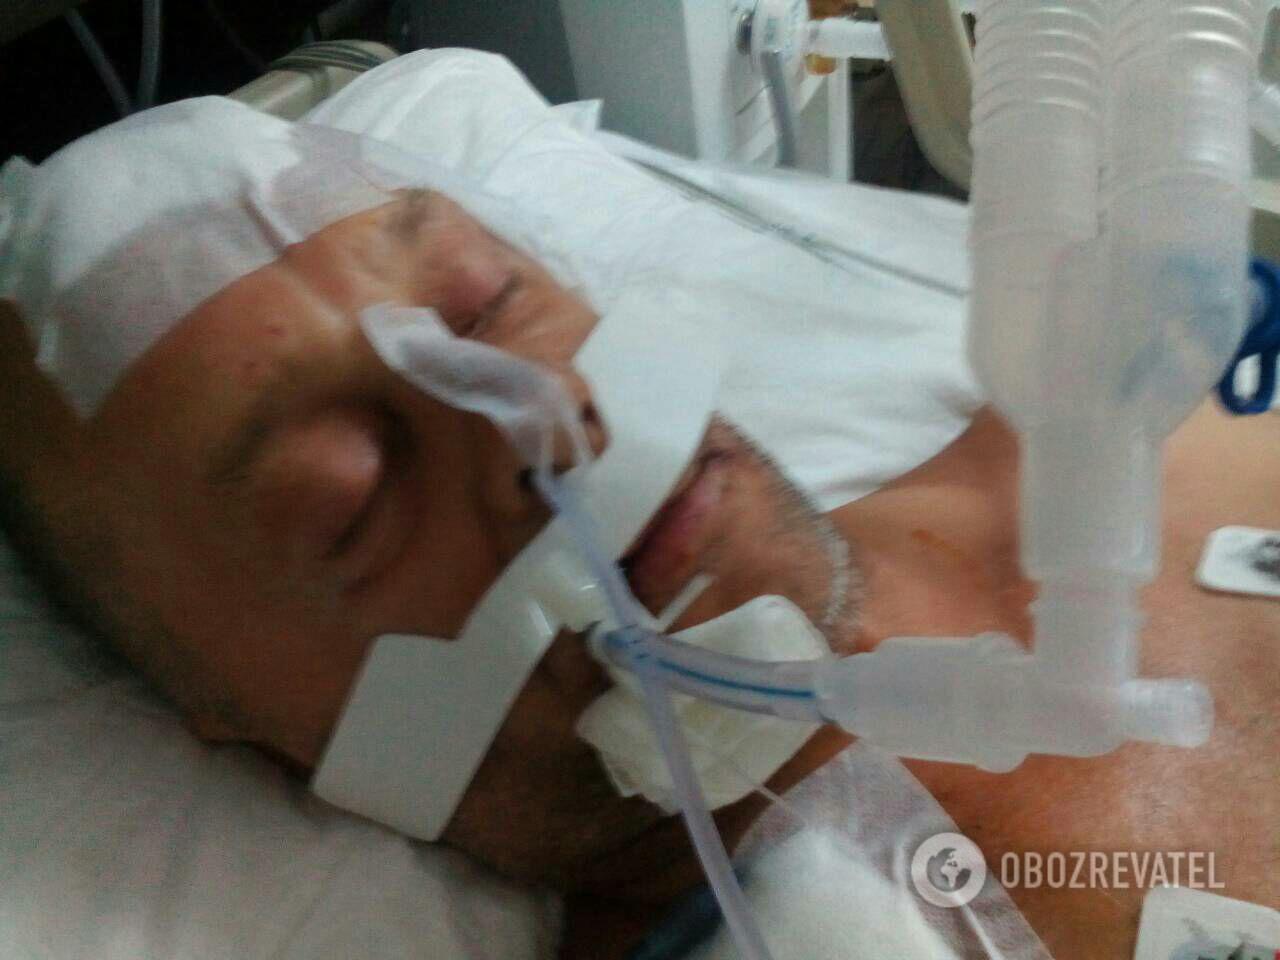 Россиянин, избивший украинца в Турции отпустили после уплаты штрафа, а житель Запорожья находится в больнице без обещанной финансовой поддержки